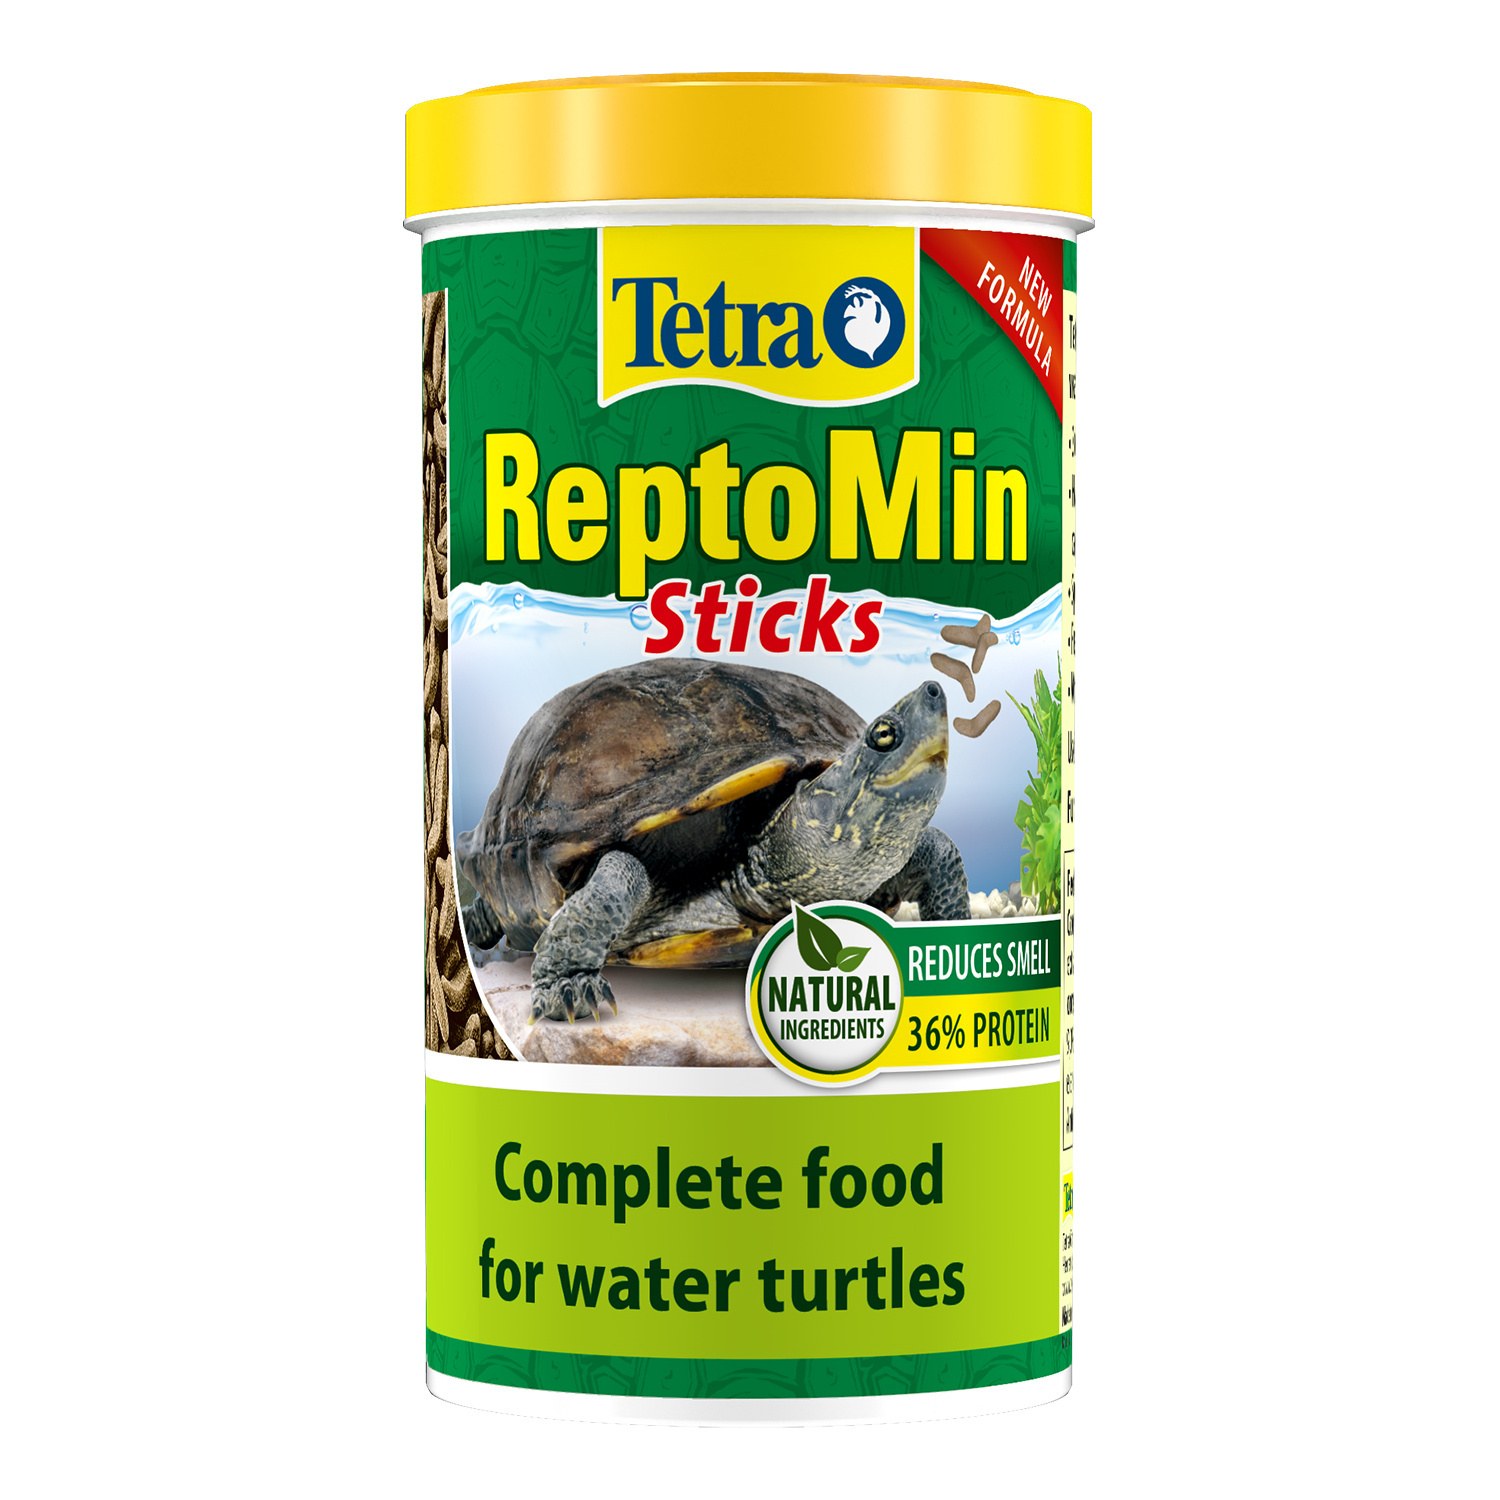 Tetra (корма) Tetra (корма) корм для водных черепах ReptoМin (130 г) tetra корма tetra корма корм для водных черепах палочки reptomin 270 г